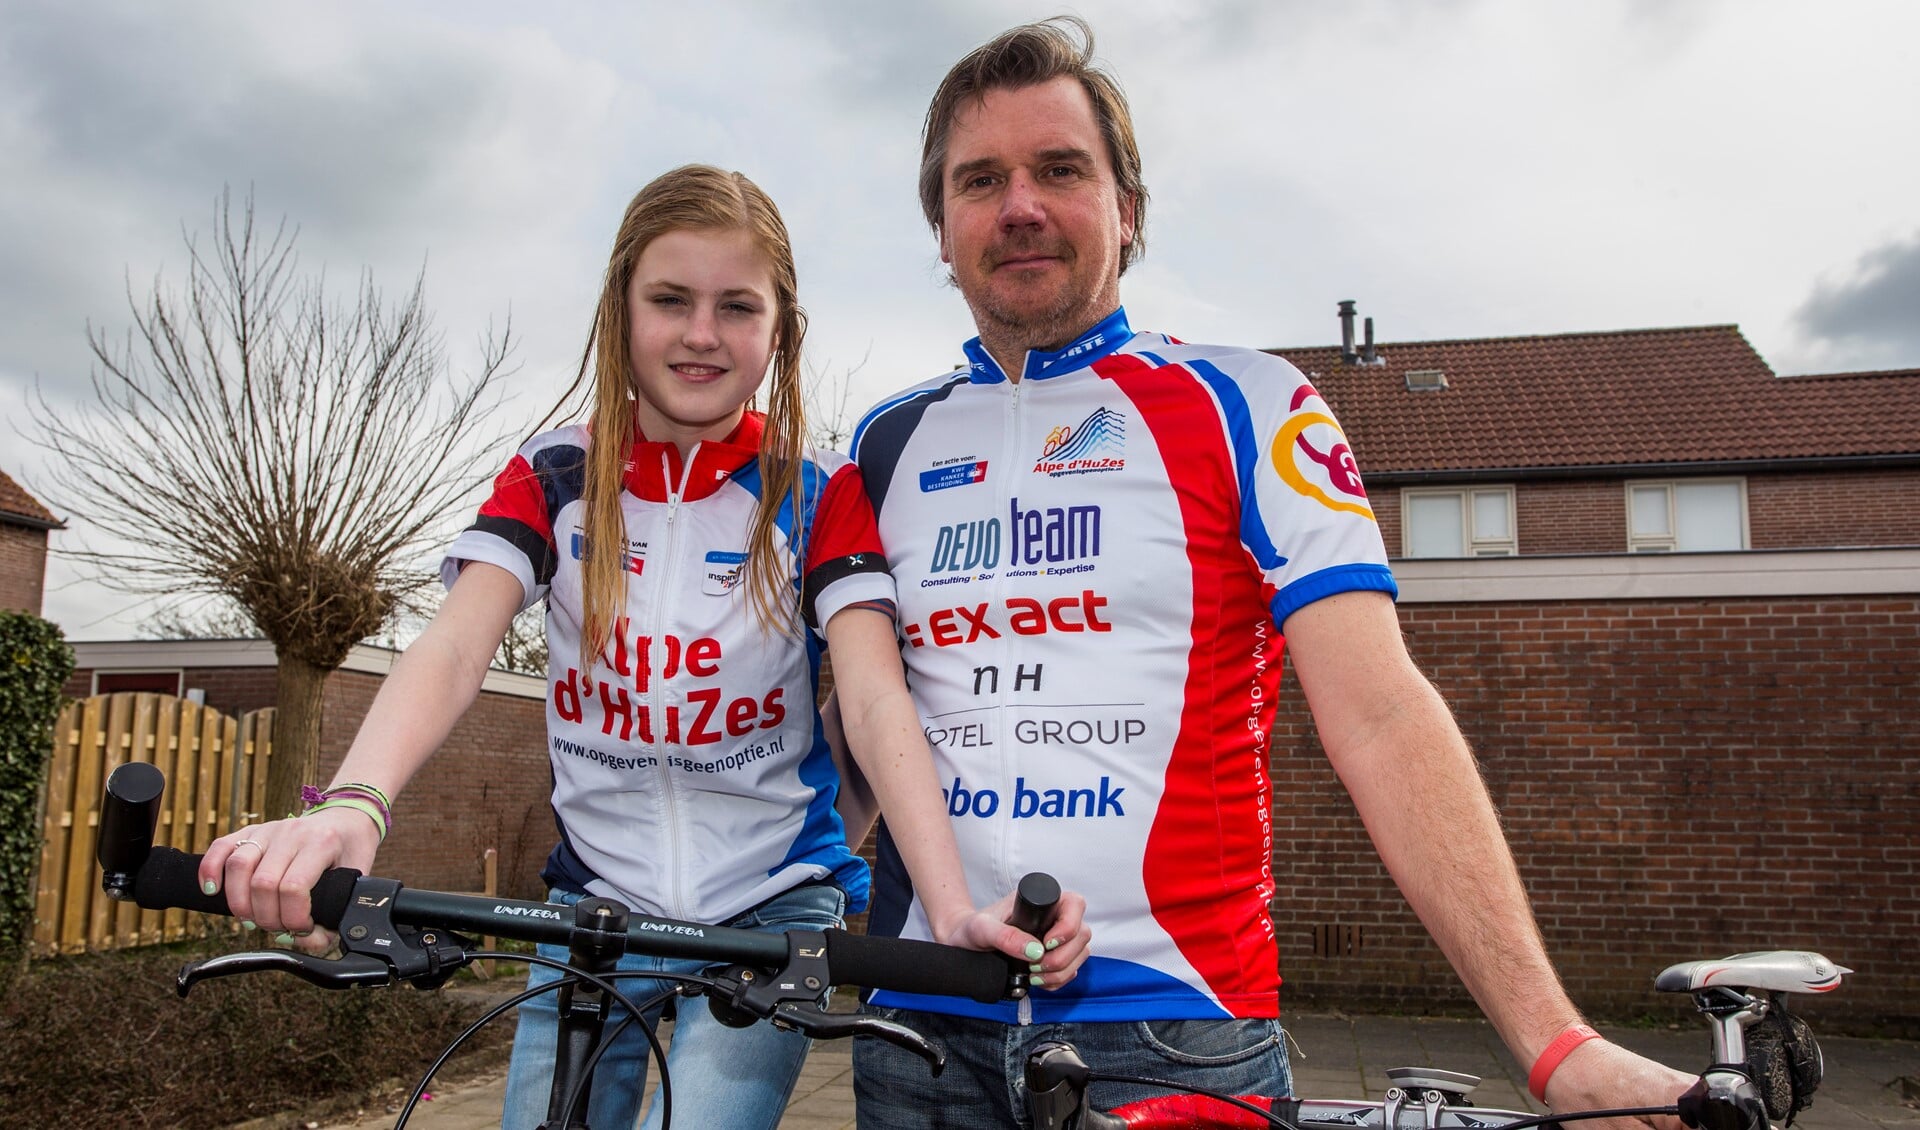 Dochter Bobbi en vader Eric de Bie gaan dit jaar samen rijden voor Alpe d'HuZes.